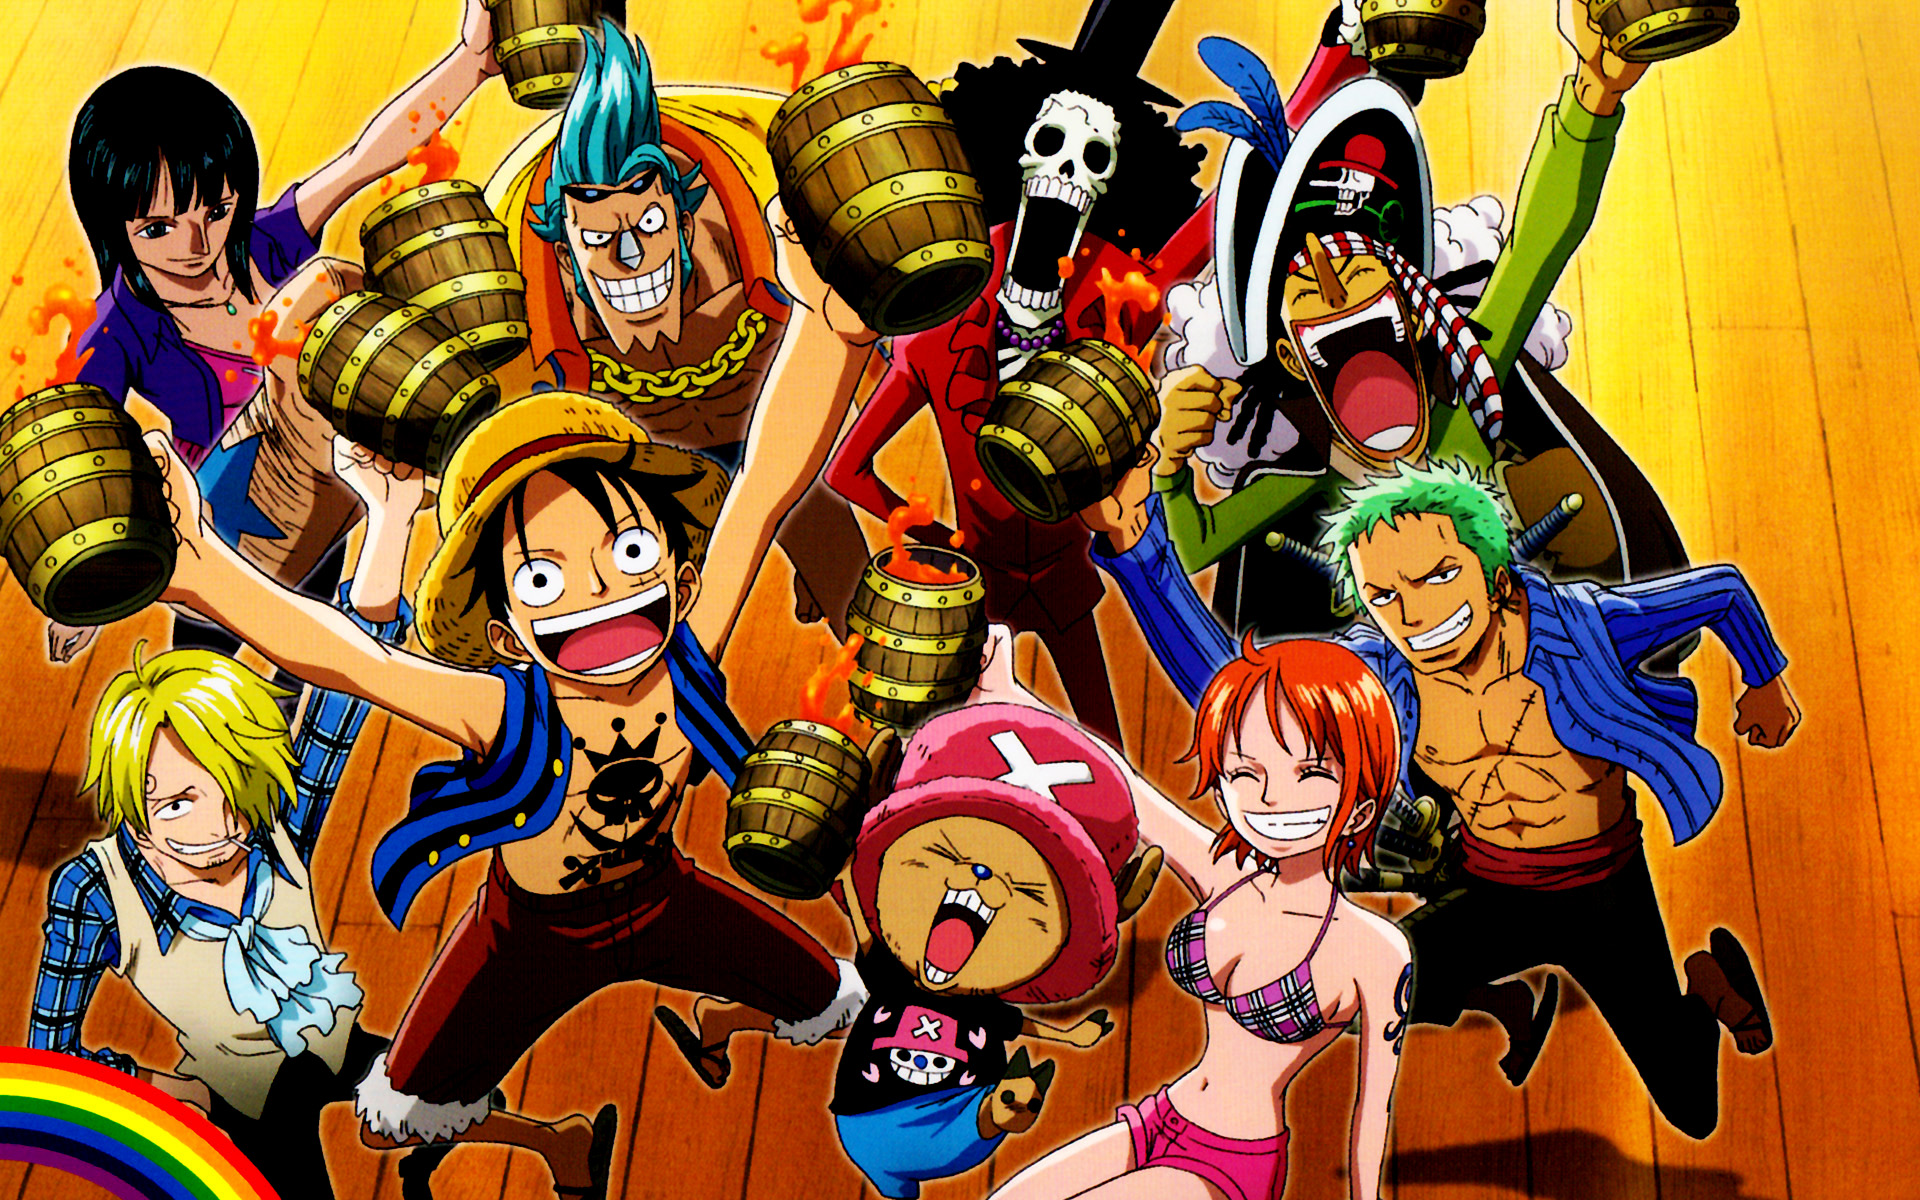 Download mobile wallpaper Anime, One Piece, Tony Tony Chopper, Usopp (One Piece), Roronoa Zoro, Monkey D Luffy, Nami (One Piece), Sanji (One Piece), Brook (One Piece), Franky (One Piece) for free.